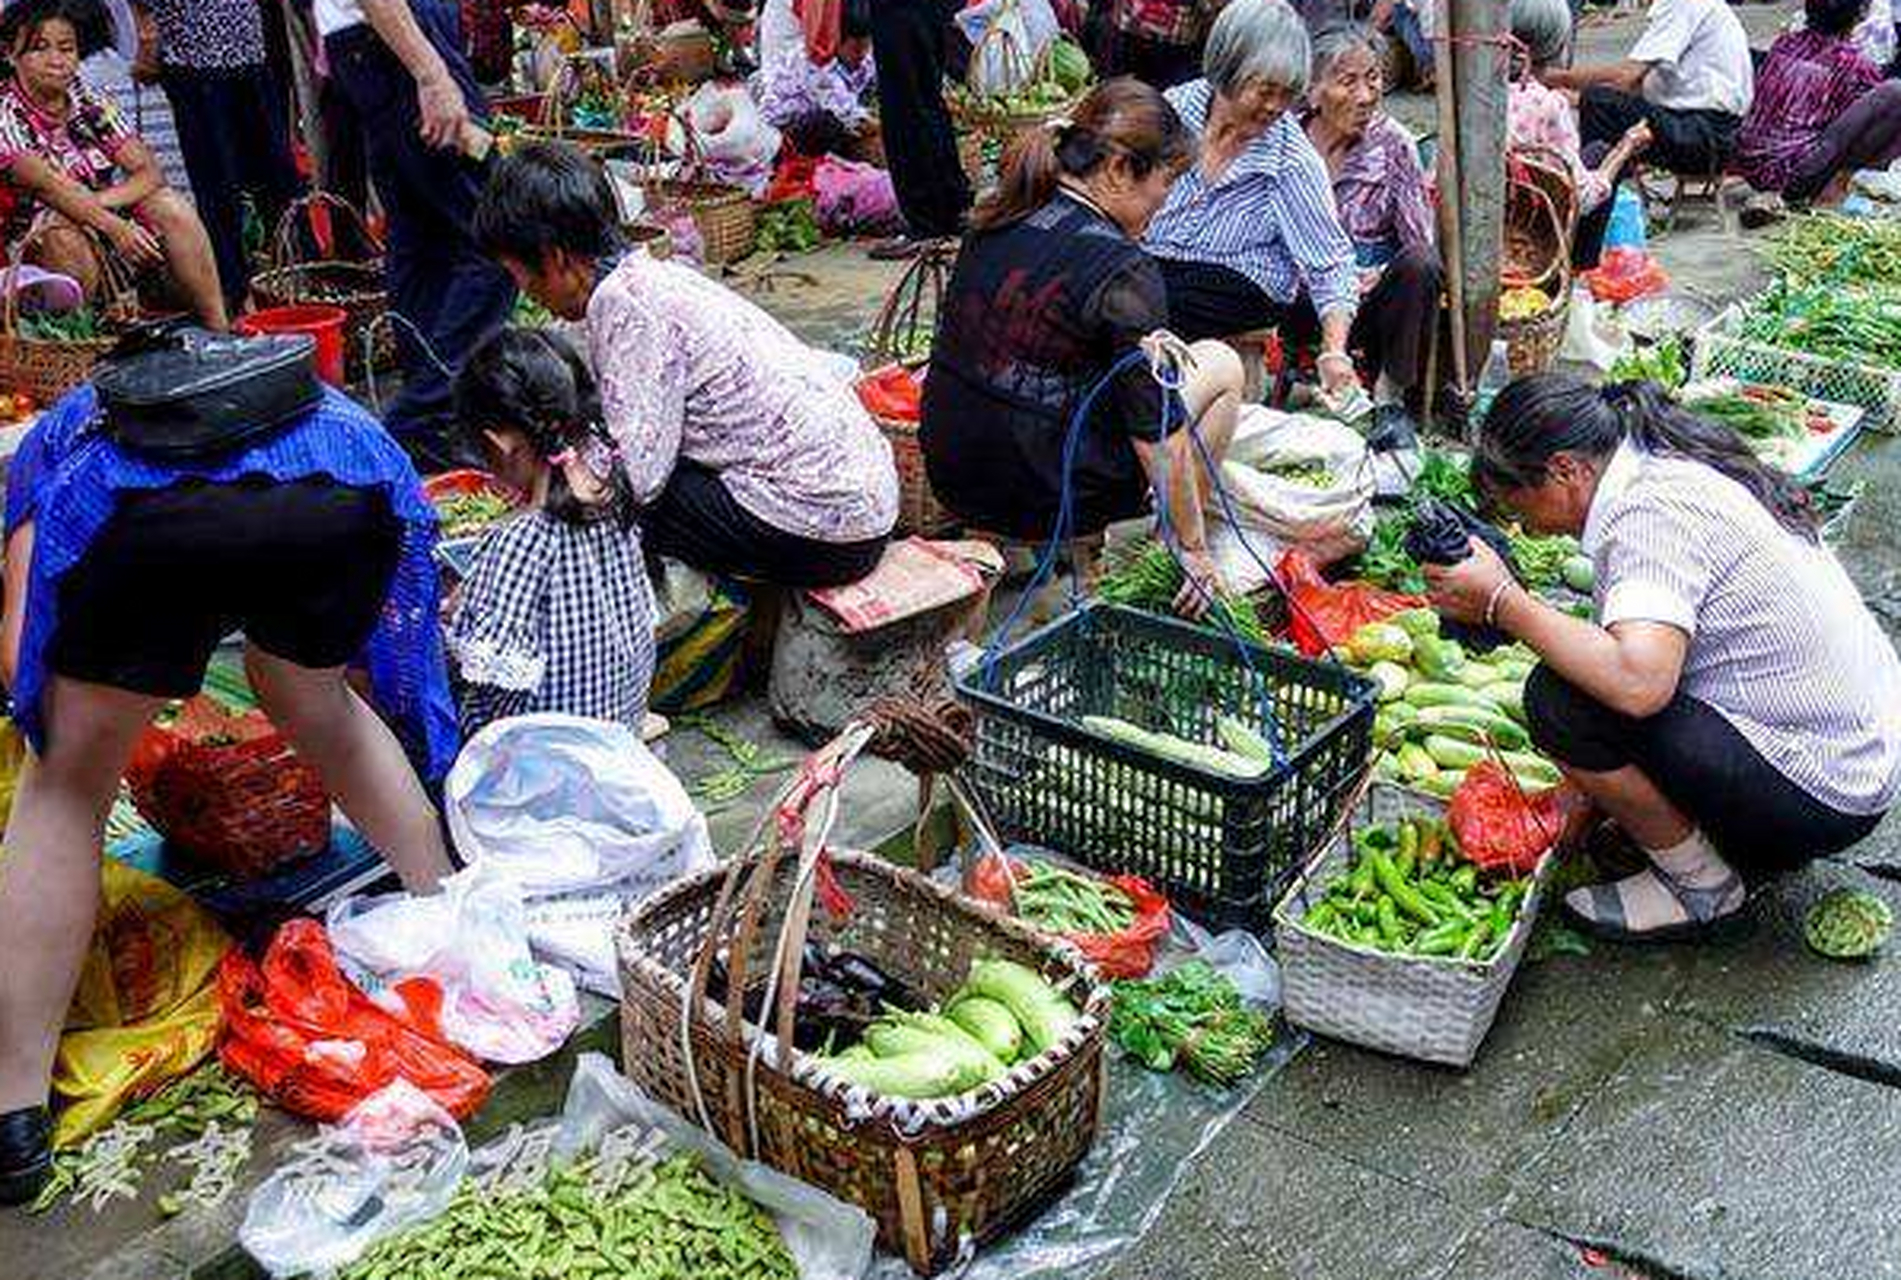 武汉的小蒋在农贸市场卖小菜,只用了短短一年的时间就赚到了180万